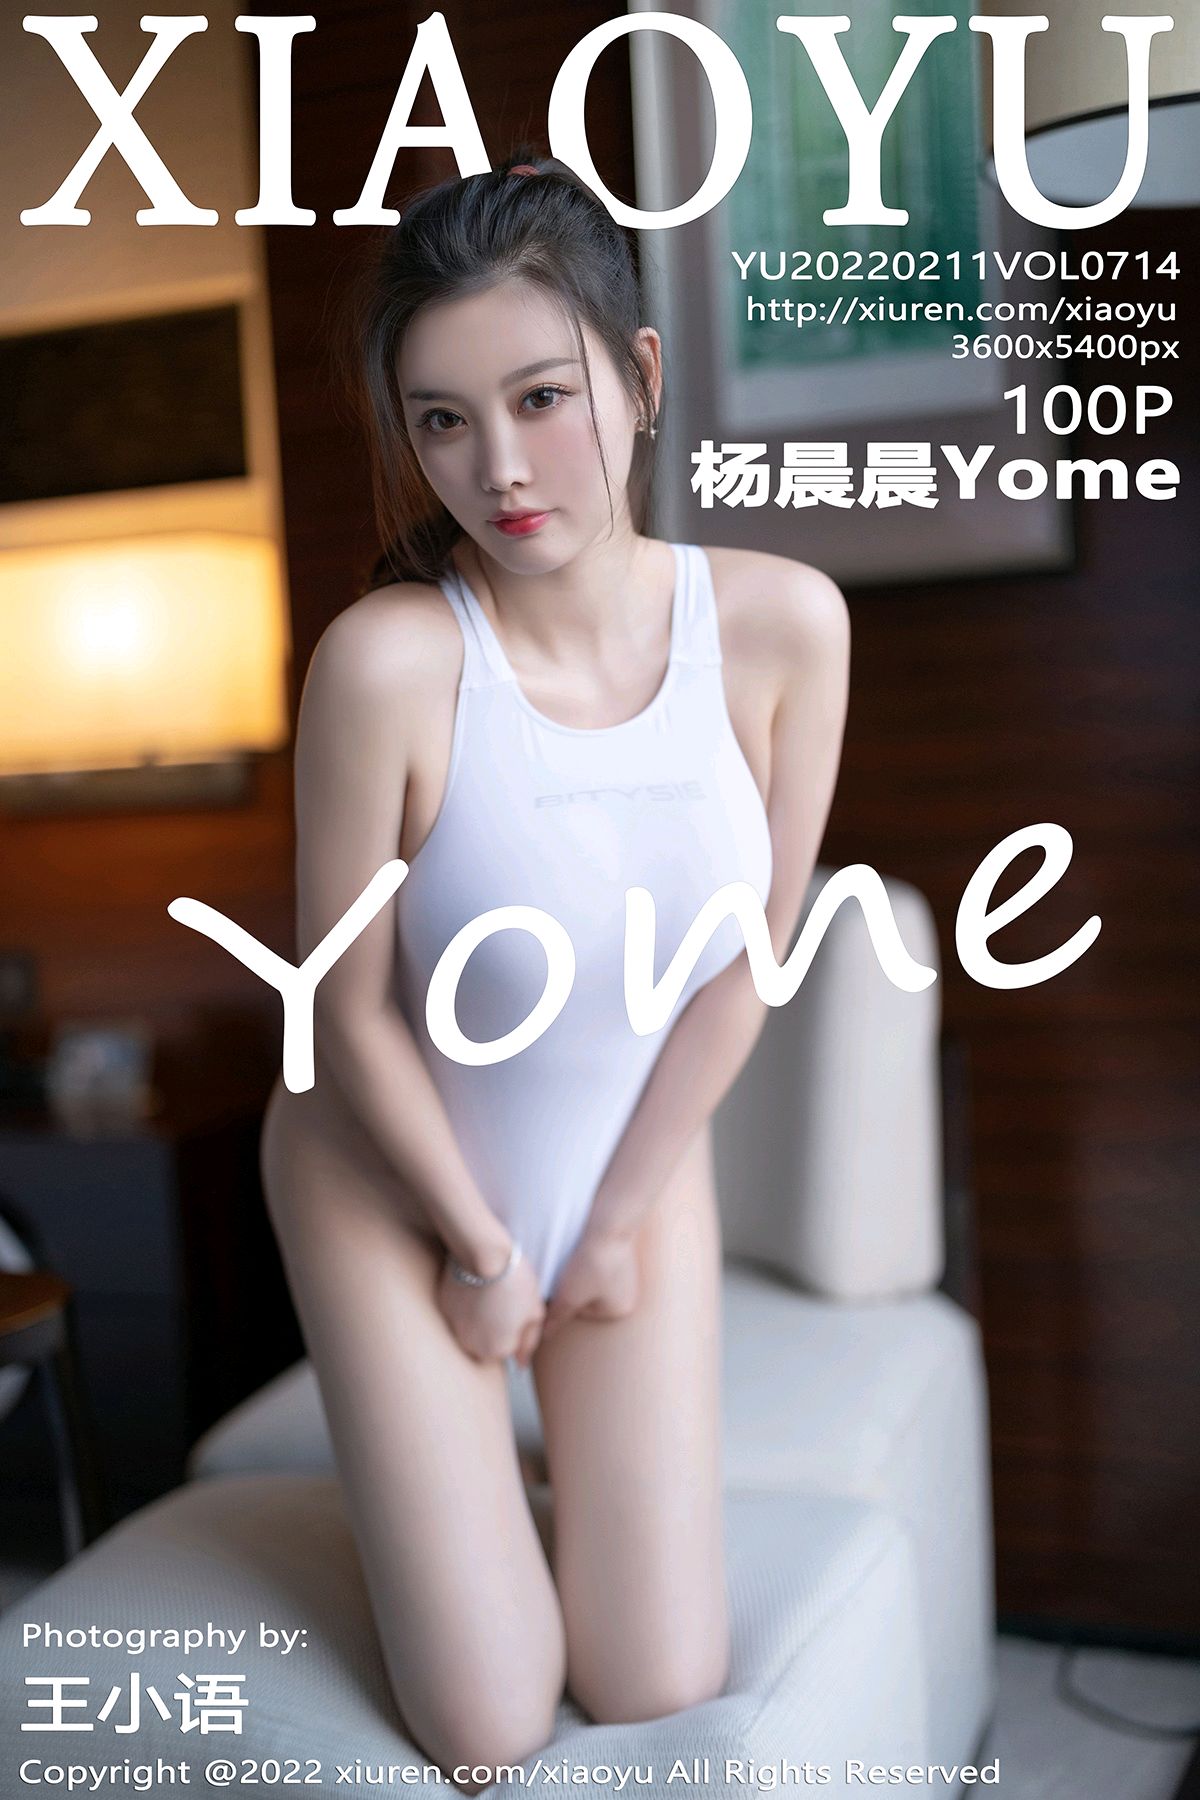 XIAOYU语画界性感模特写真第Vol.714期杨晨晨Yome (102)